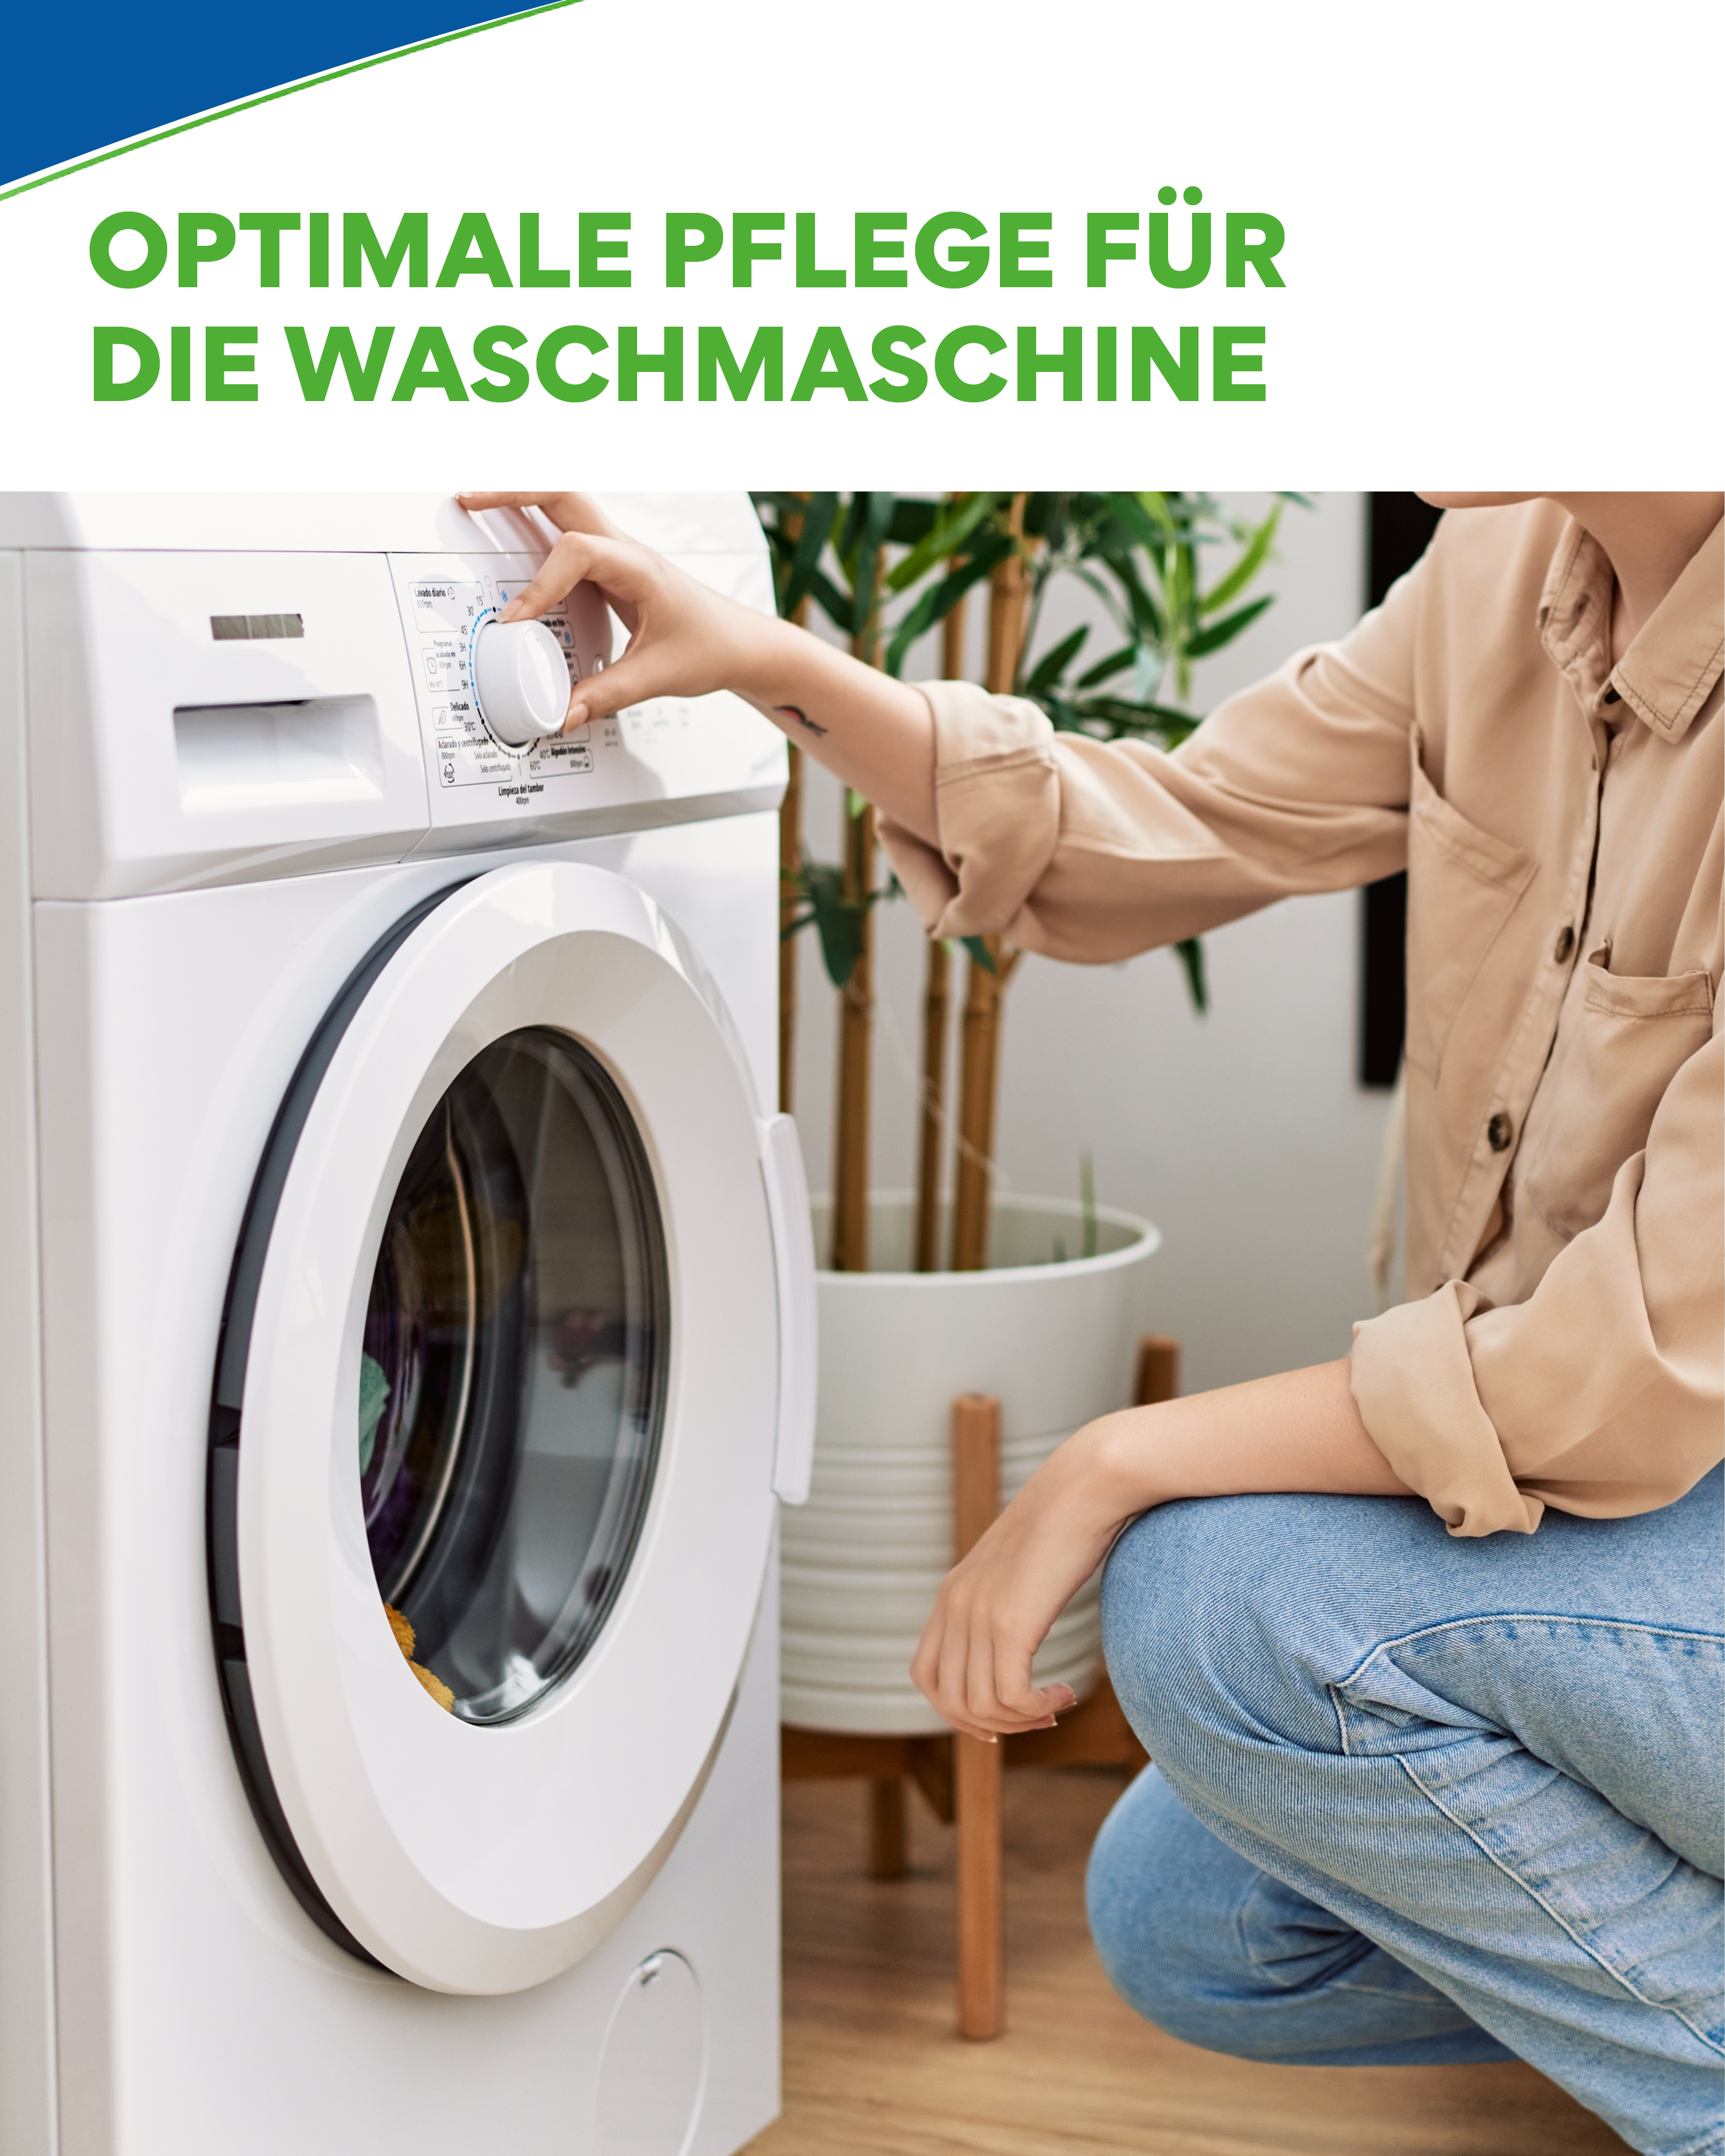 Kalkentferner in Aktion - Das Pulver löst hartnäckige Kalkablagerungen in der Waschmaschine, um optimale Waschergebnisse zu erzielen.